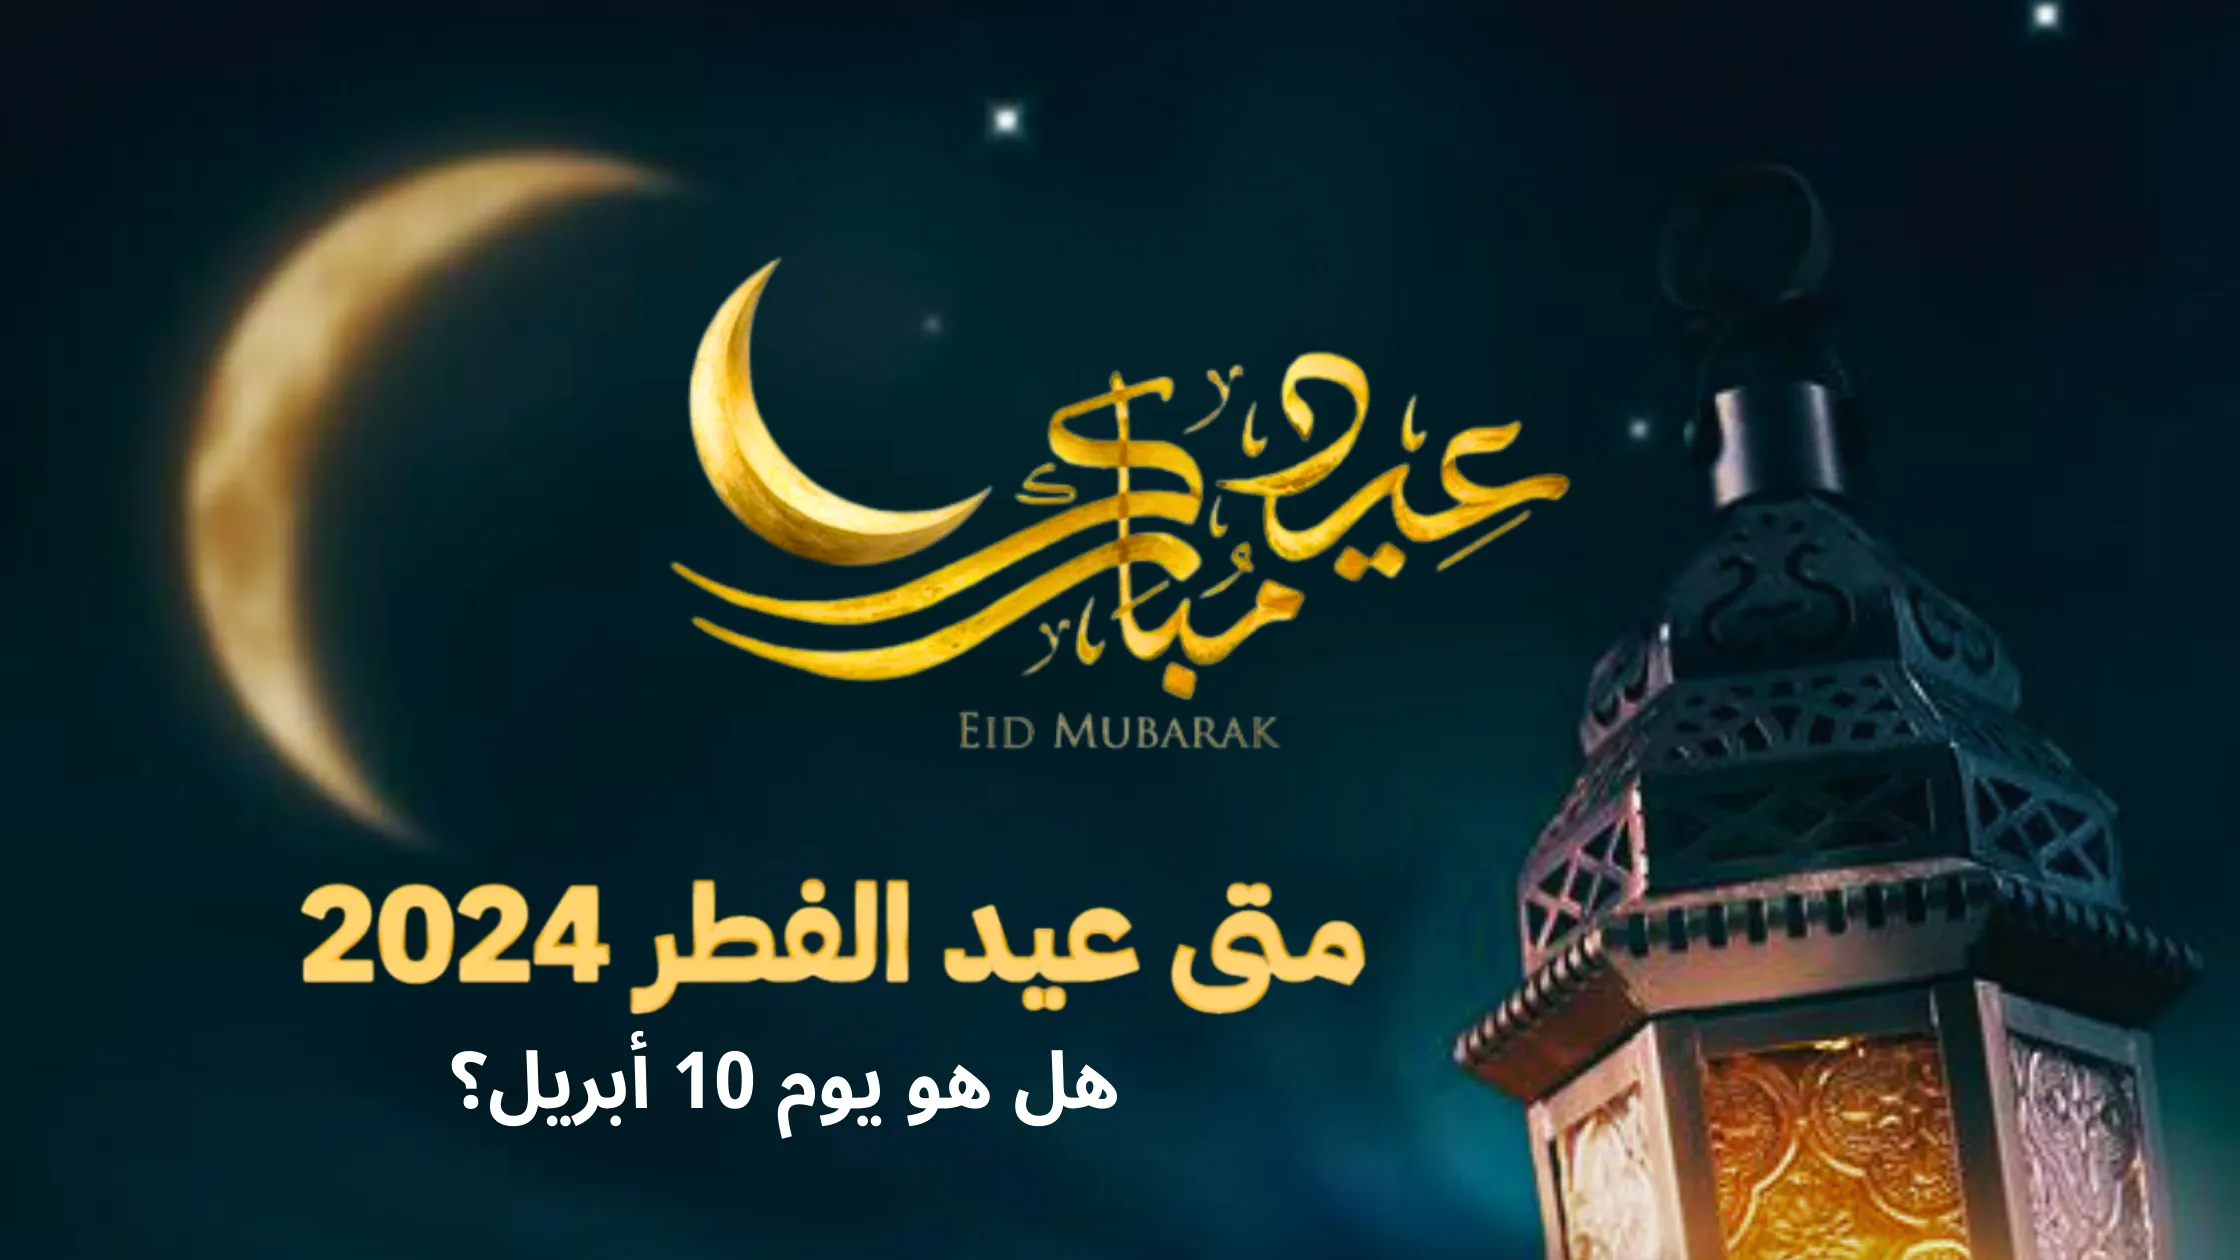 صورة تحتفل بعيد مبارك، يظهر فيها هلال وفانوس ونص عربي يترجم إلى "عيد مبارك". إنه يدل على "متى عيد الفطر 2024؟ هل هو يوم 10 أبريل؟